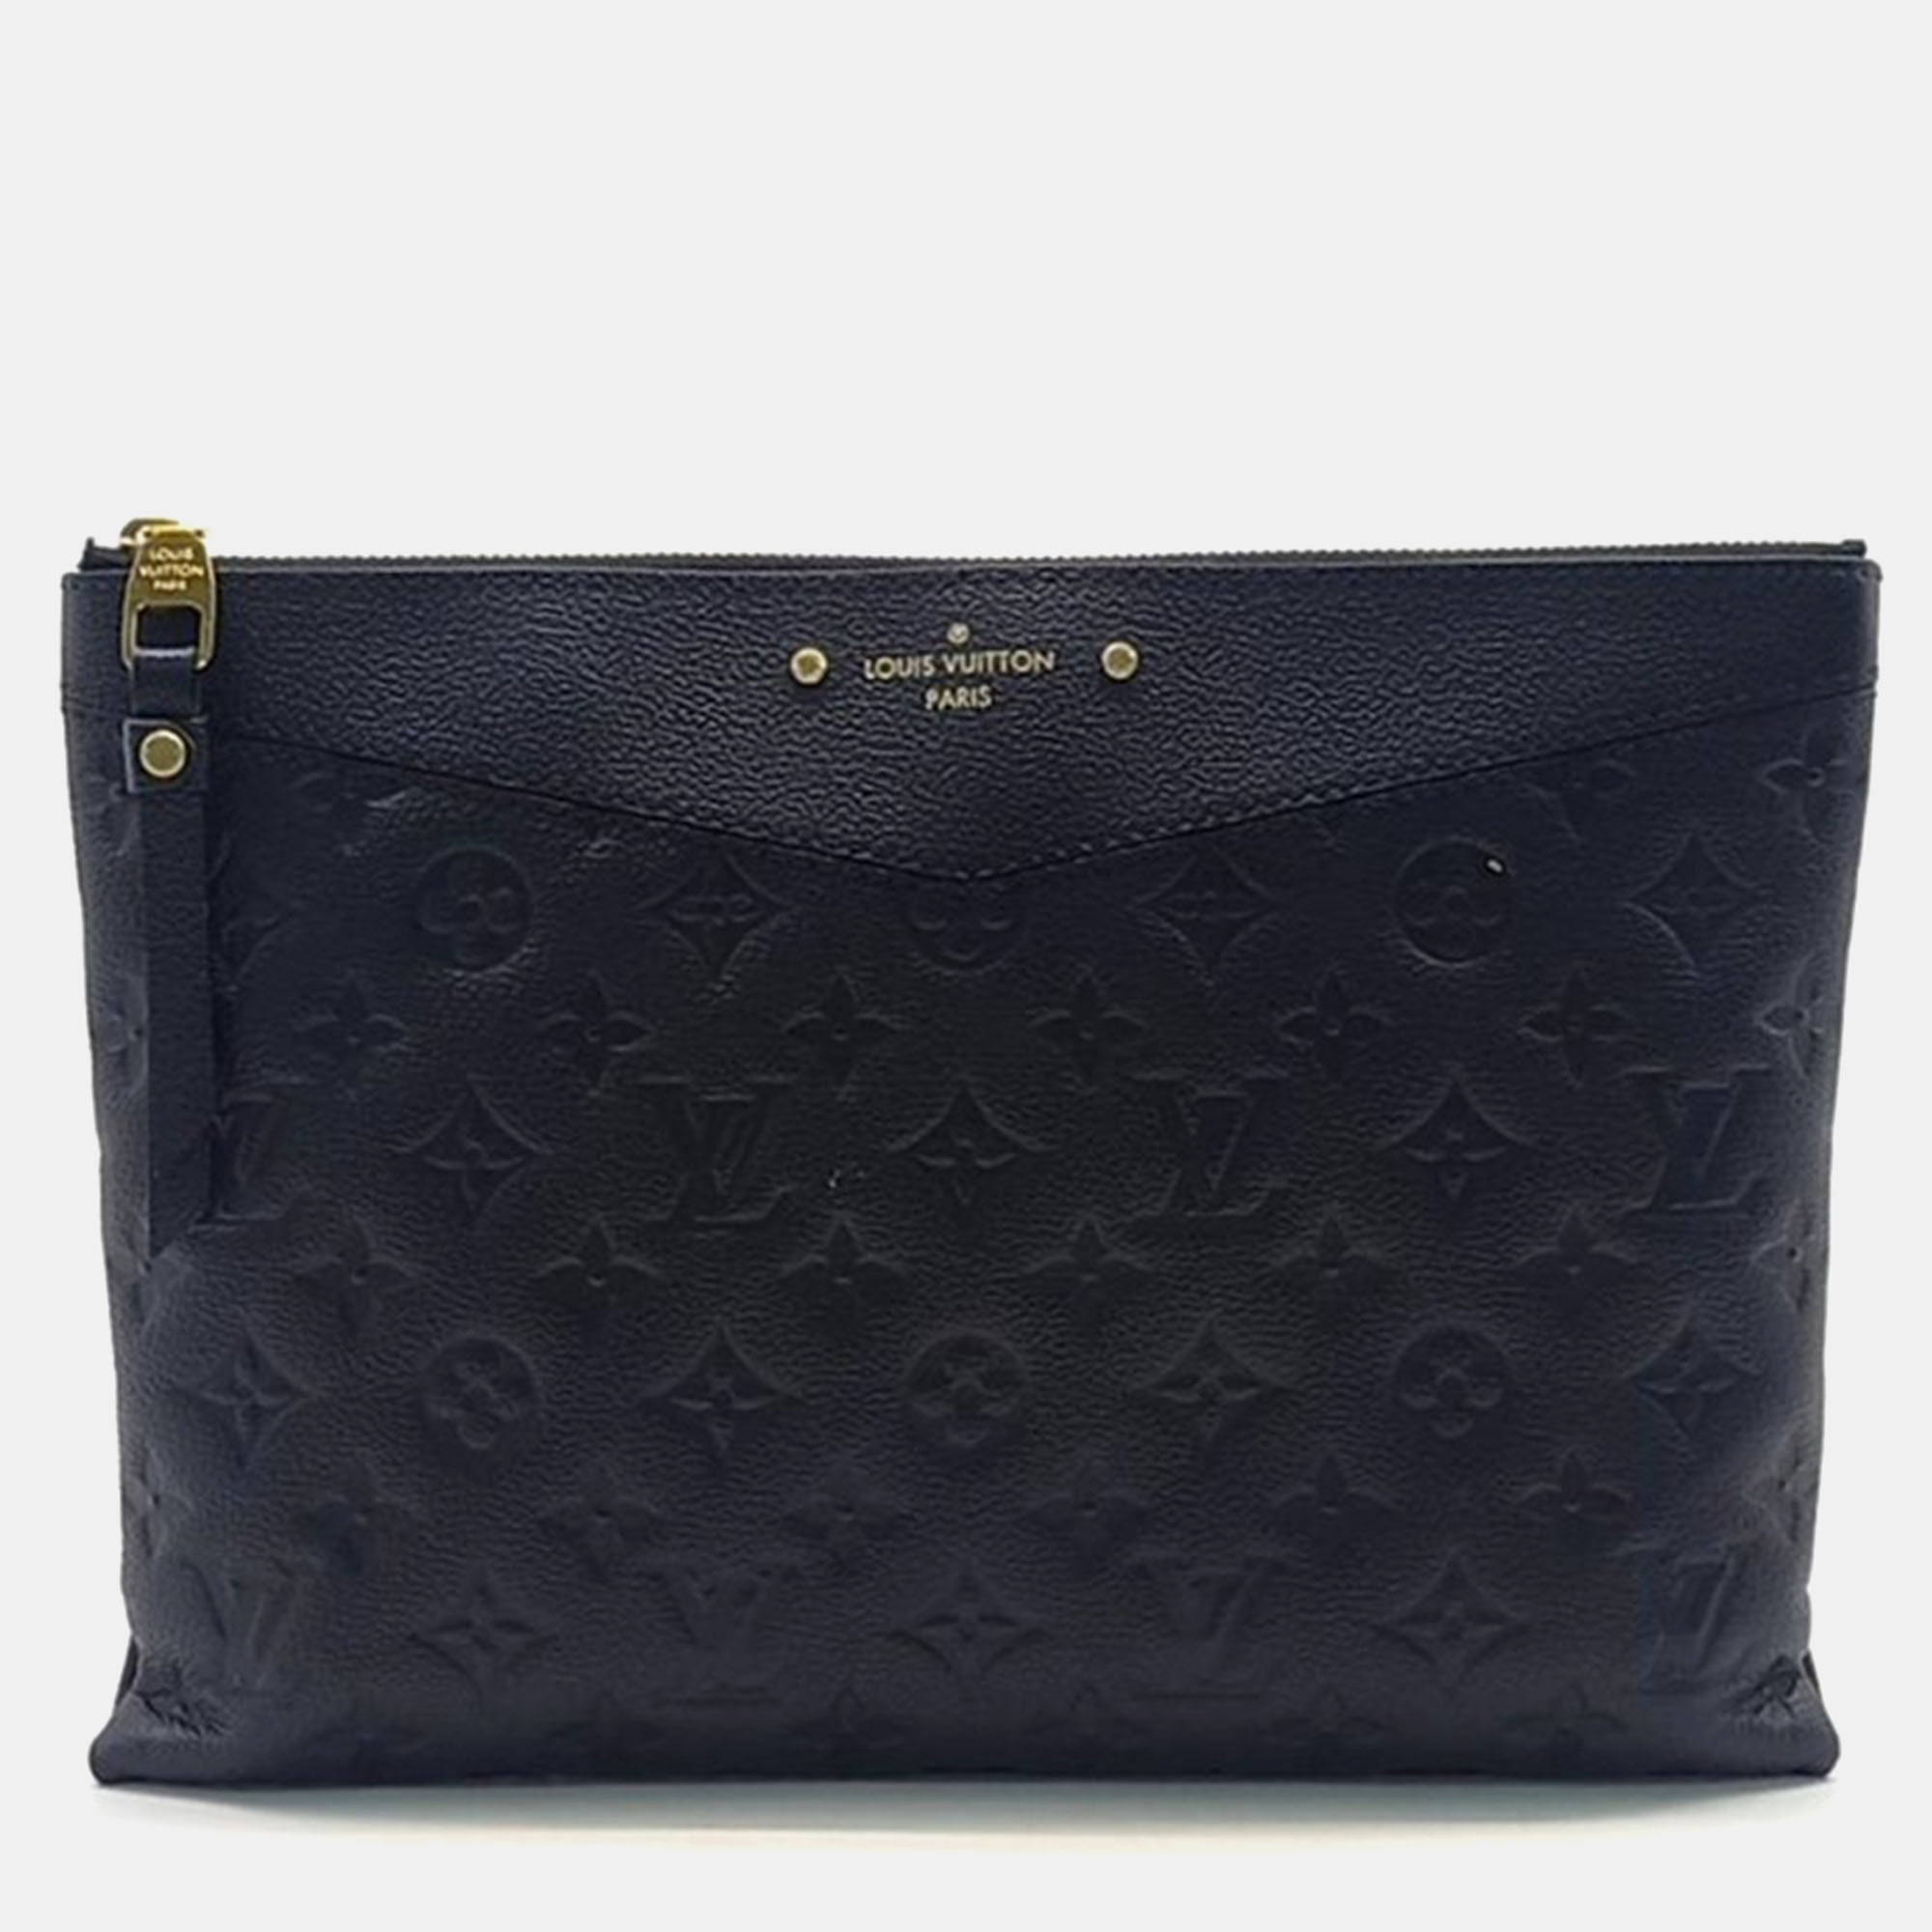 

Louis Vuitton Black Monogram Empriente Leather Daily Clutch Bag